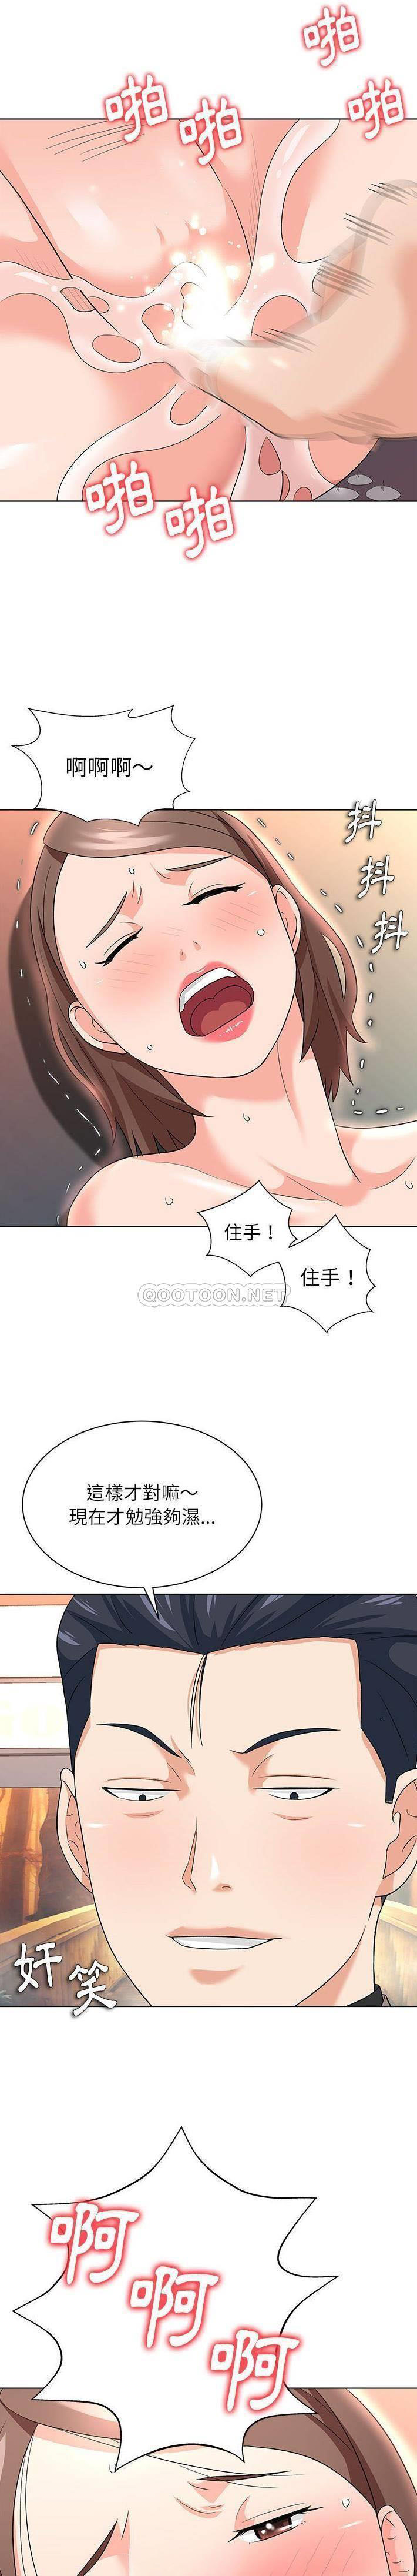 韩国污漫画 豪賭陷阱 第13话 7